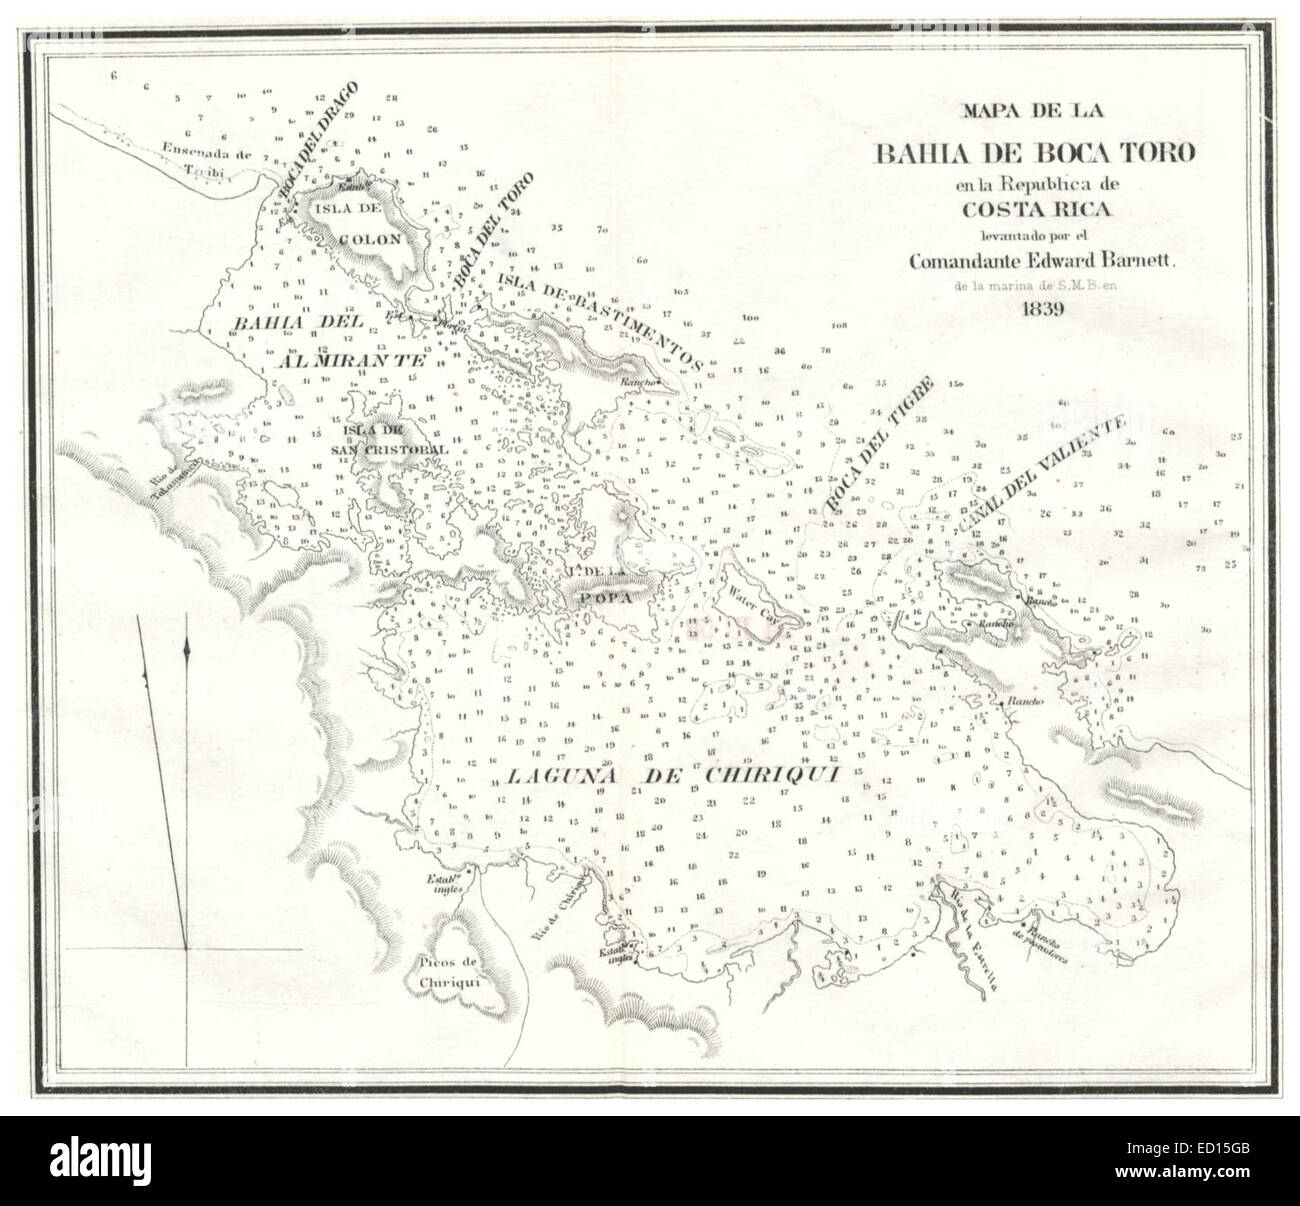 Mapa de la Bahia de Boca Toro en la Republica de Costa Rica (1839) Stock Photo